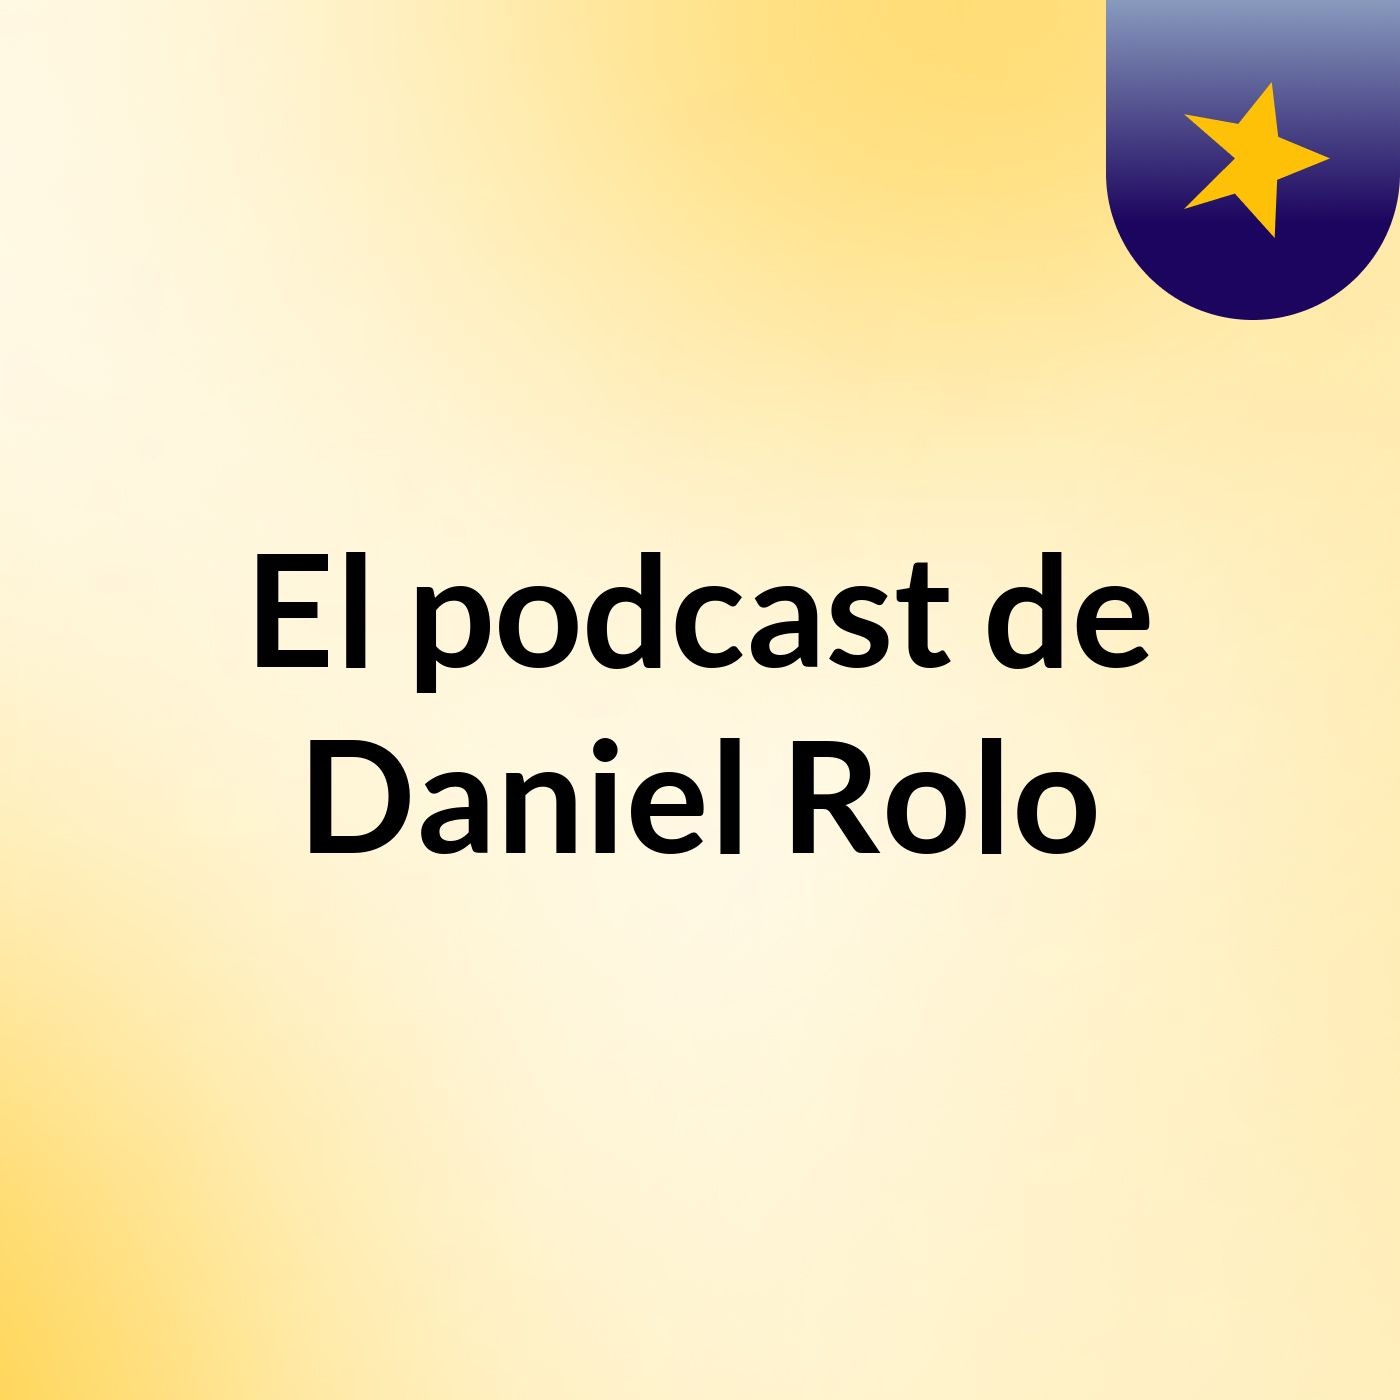 El podcast de Daniel Rolo